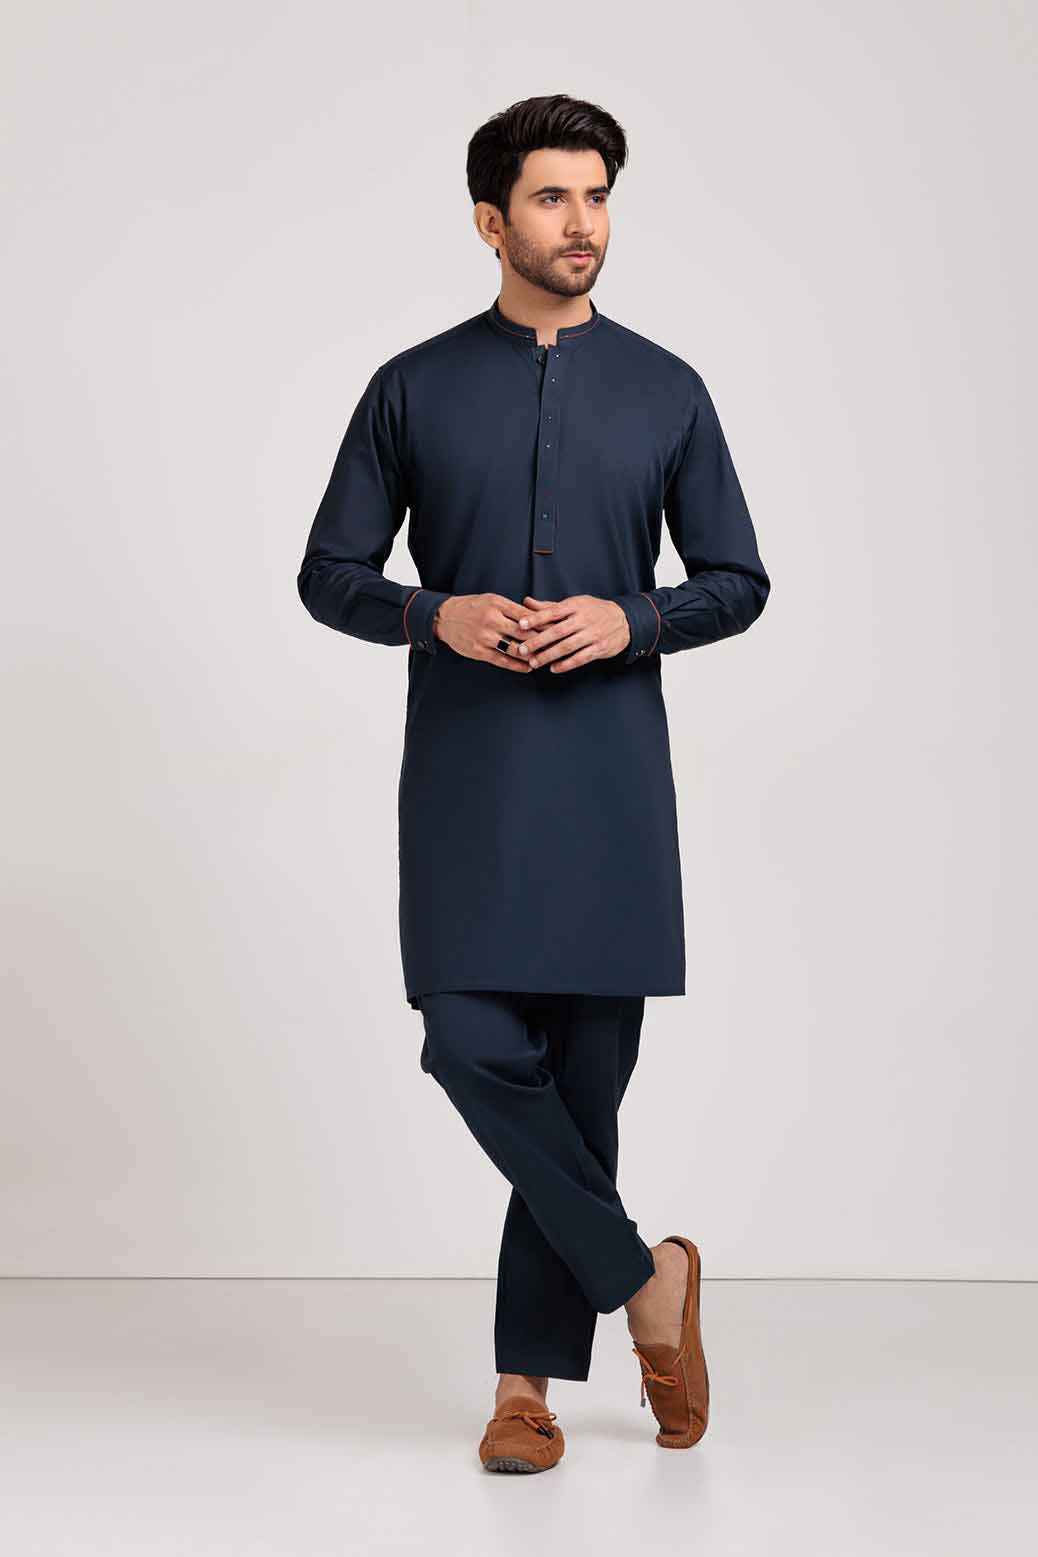 Blue shalwar suit for winter